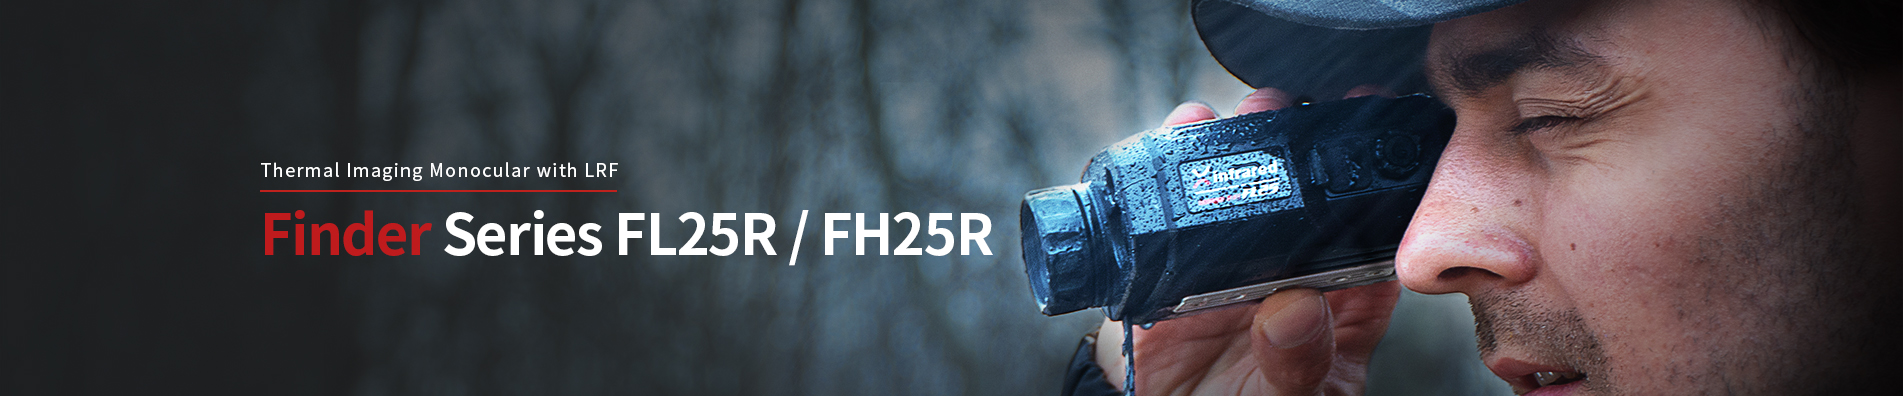 Wärmebildffernrohr Finder-Serie (FH25R&FL25R)